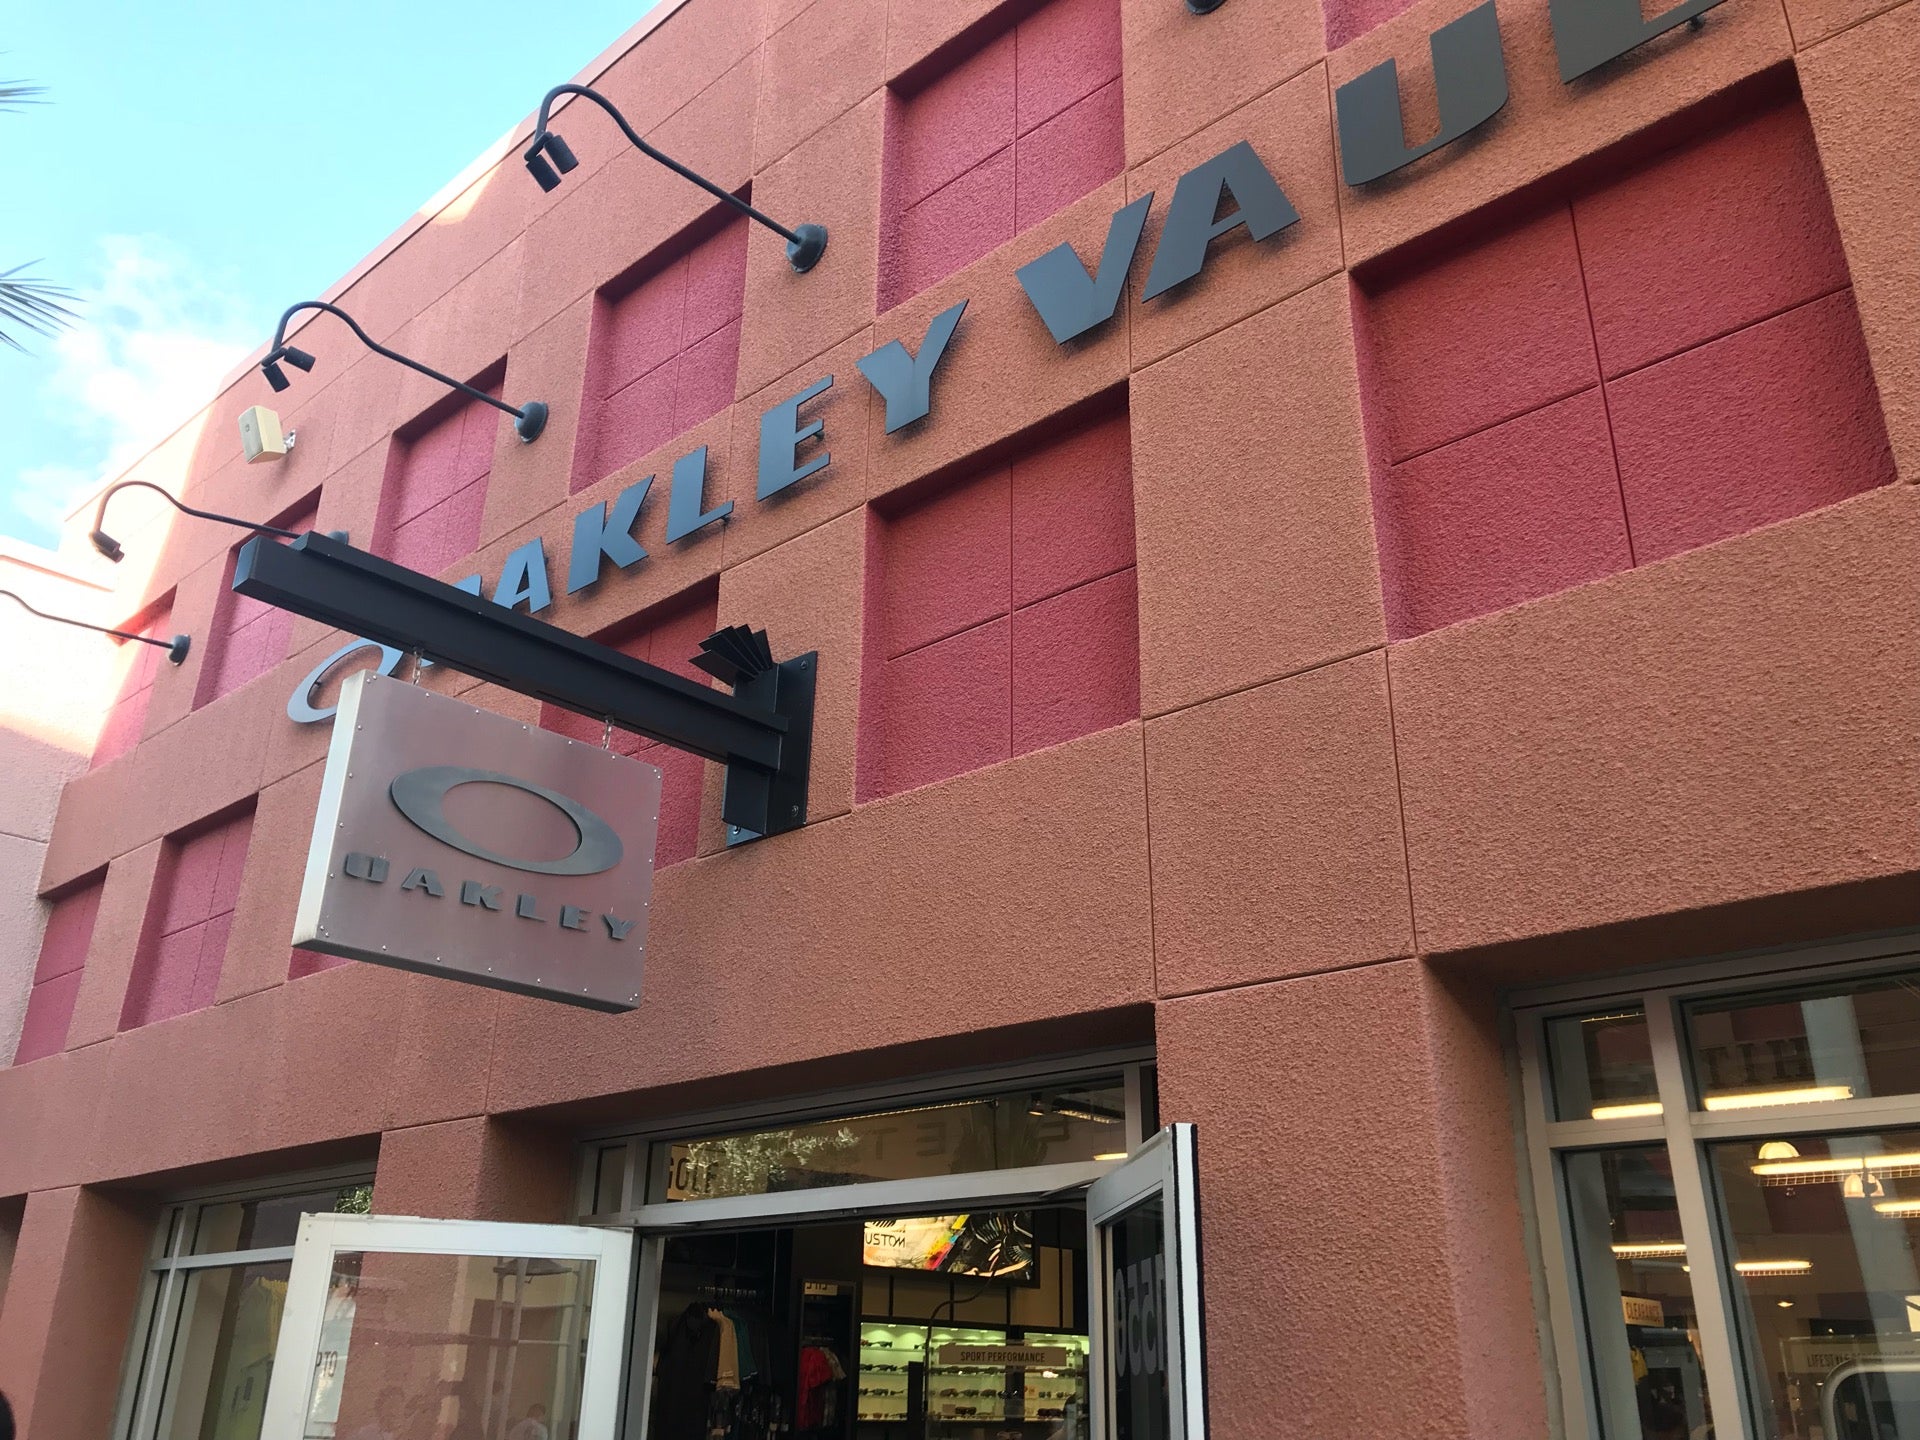 Oakley Vault - The Outlets at Legends